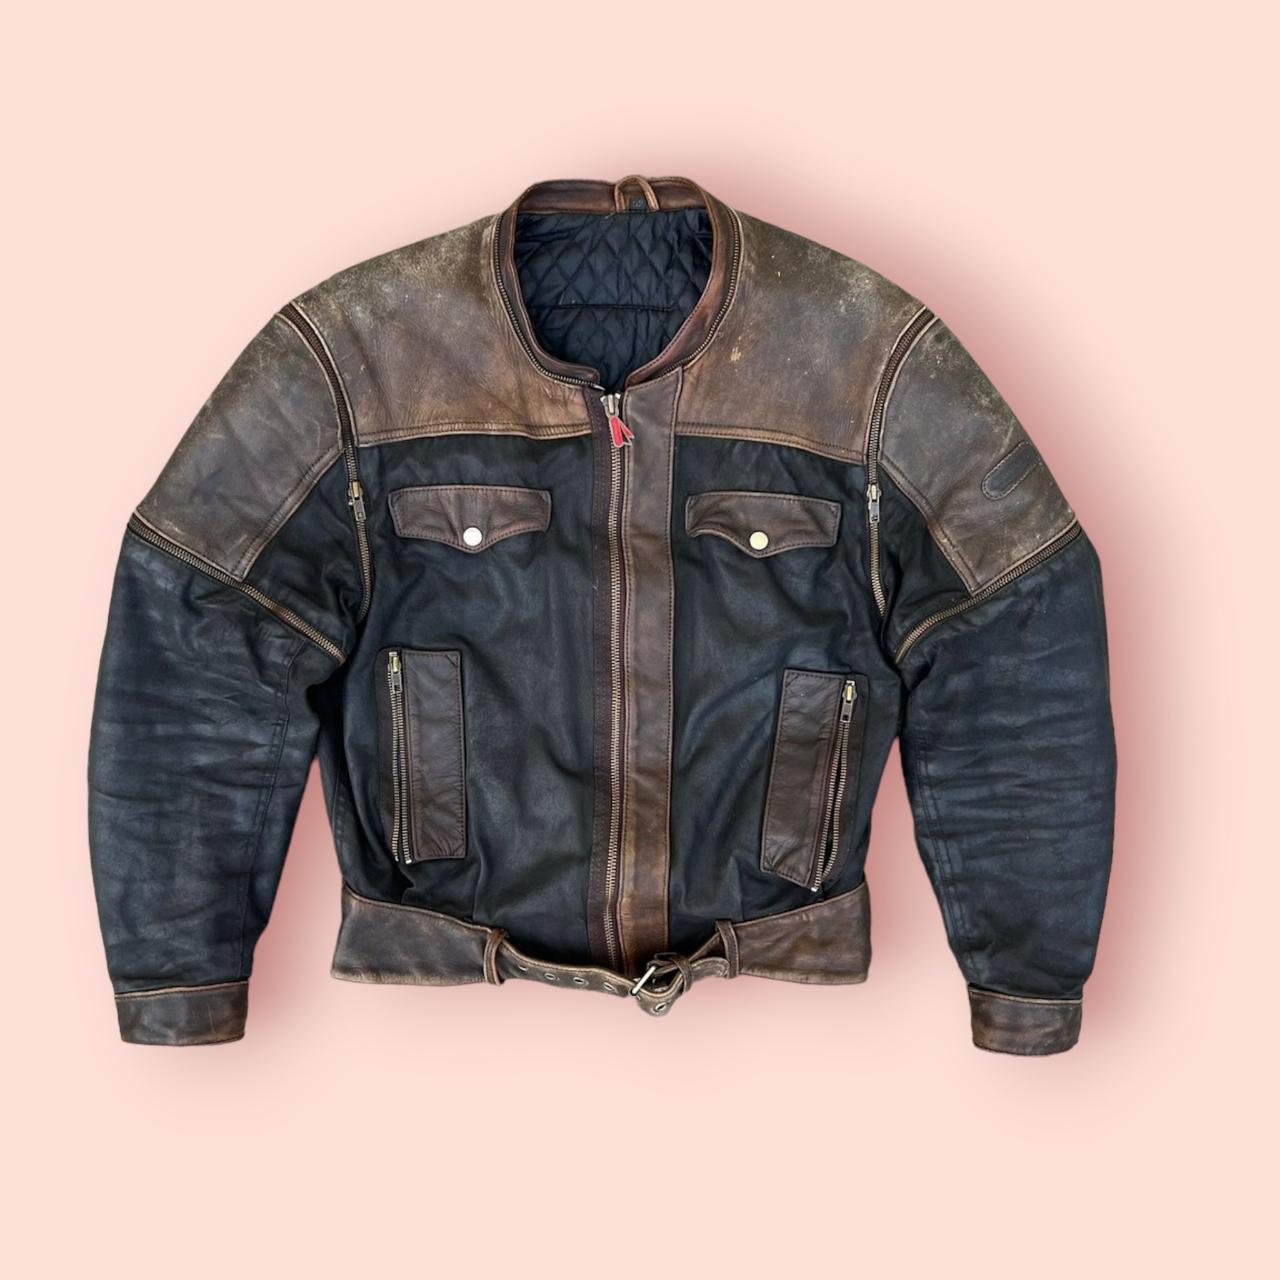 Vintage 90s Real Leather Jacket Black Brown Used in... - Depop